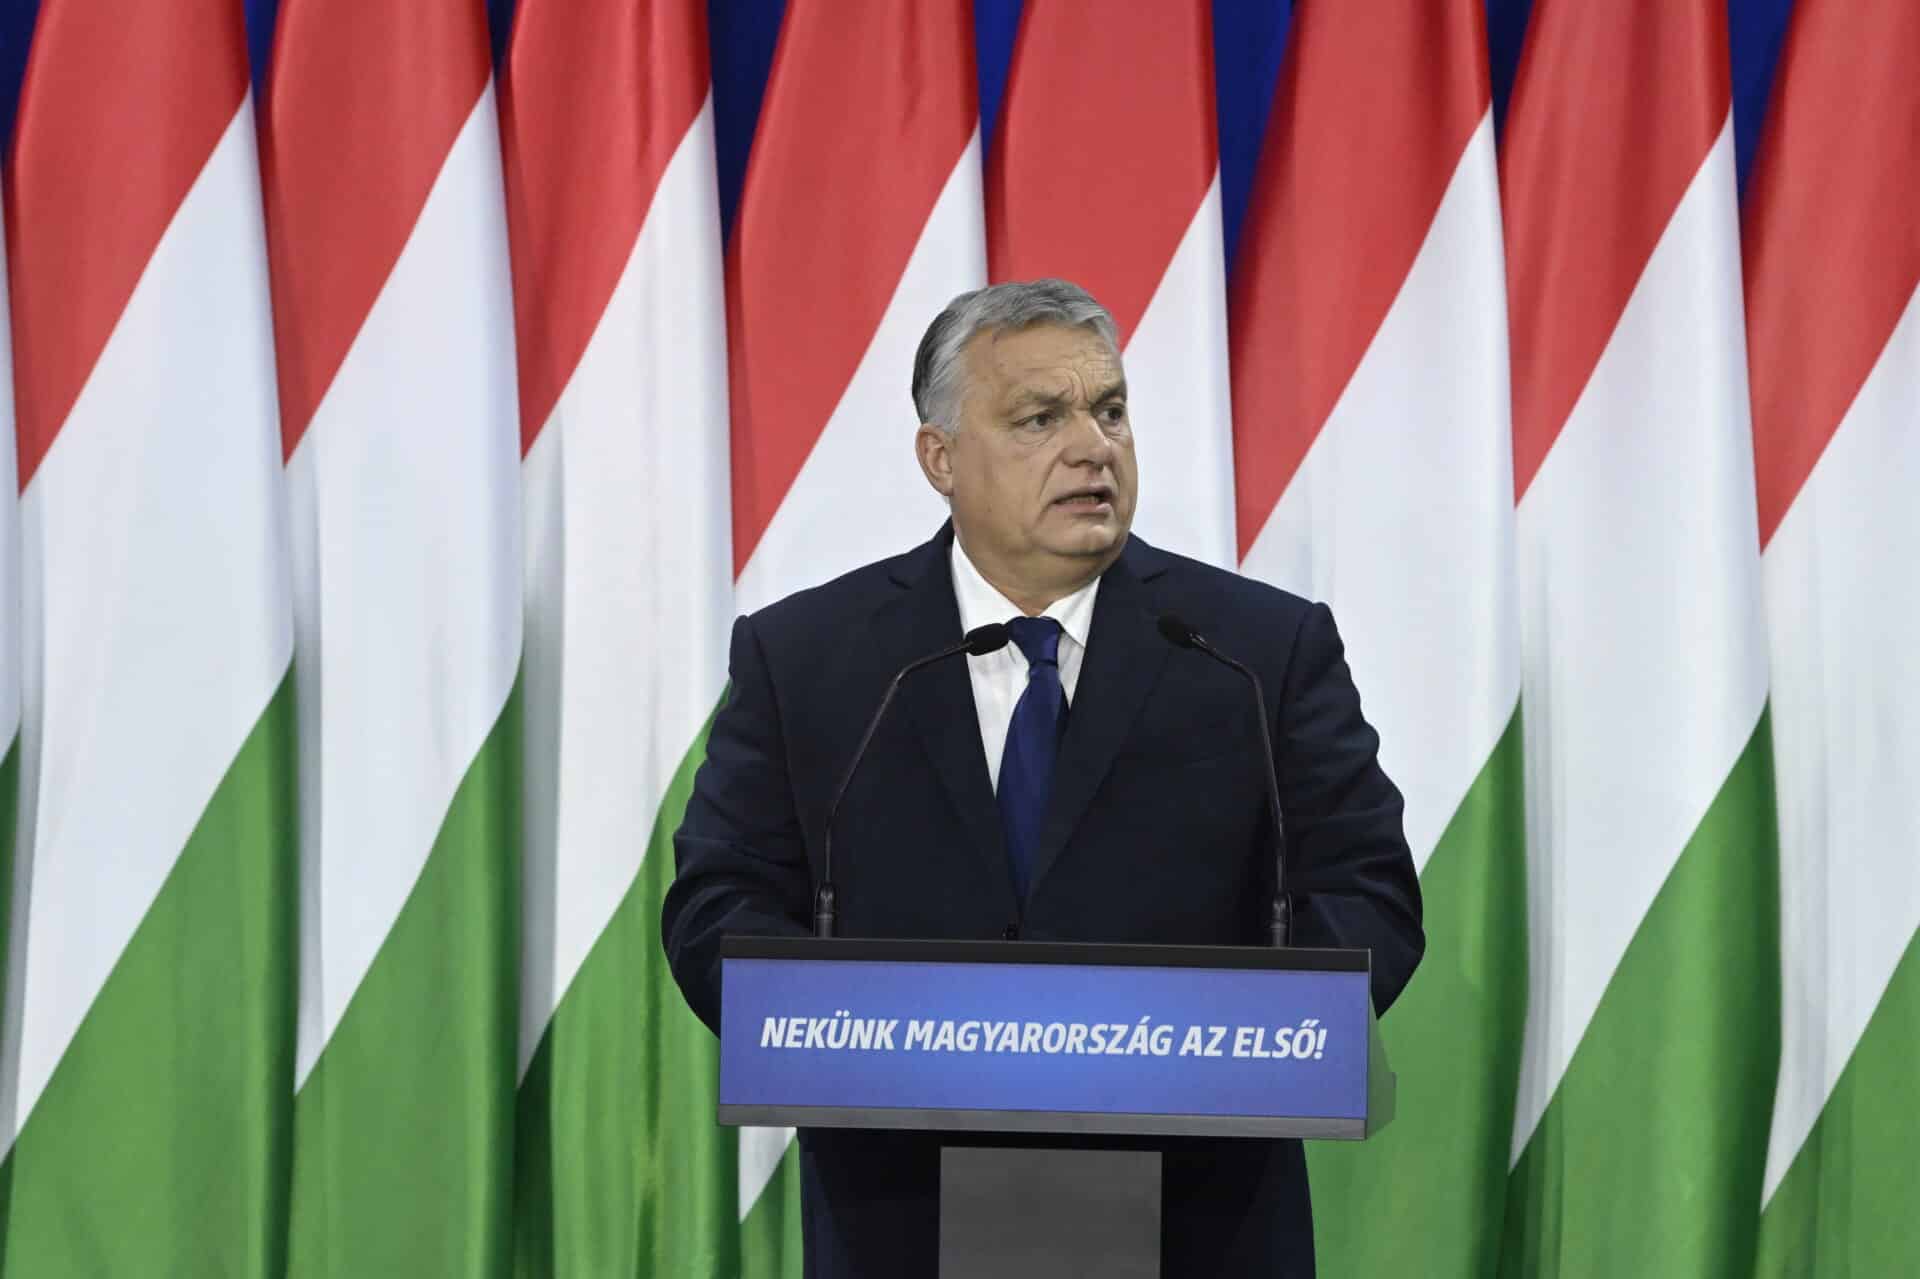 Évértékelő – Orbán Viktor: pedofil bűncselekményeknél nincs kegyelem